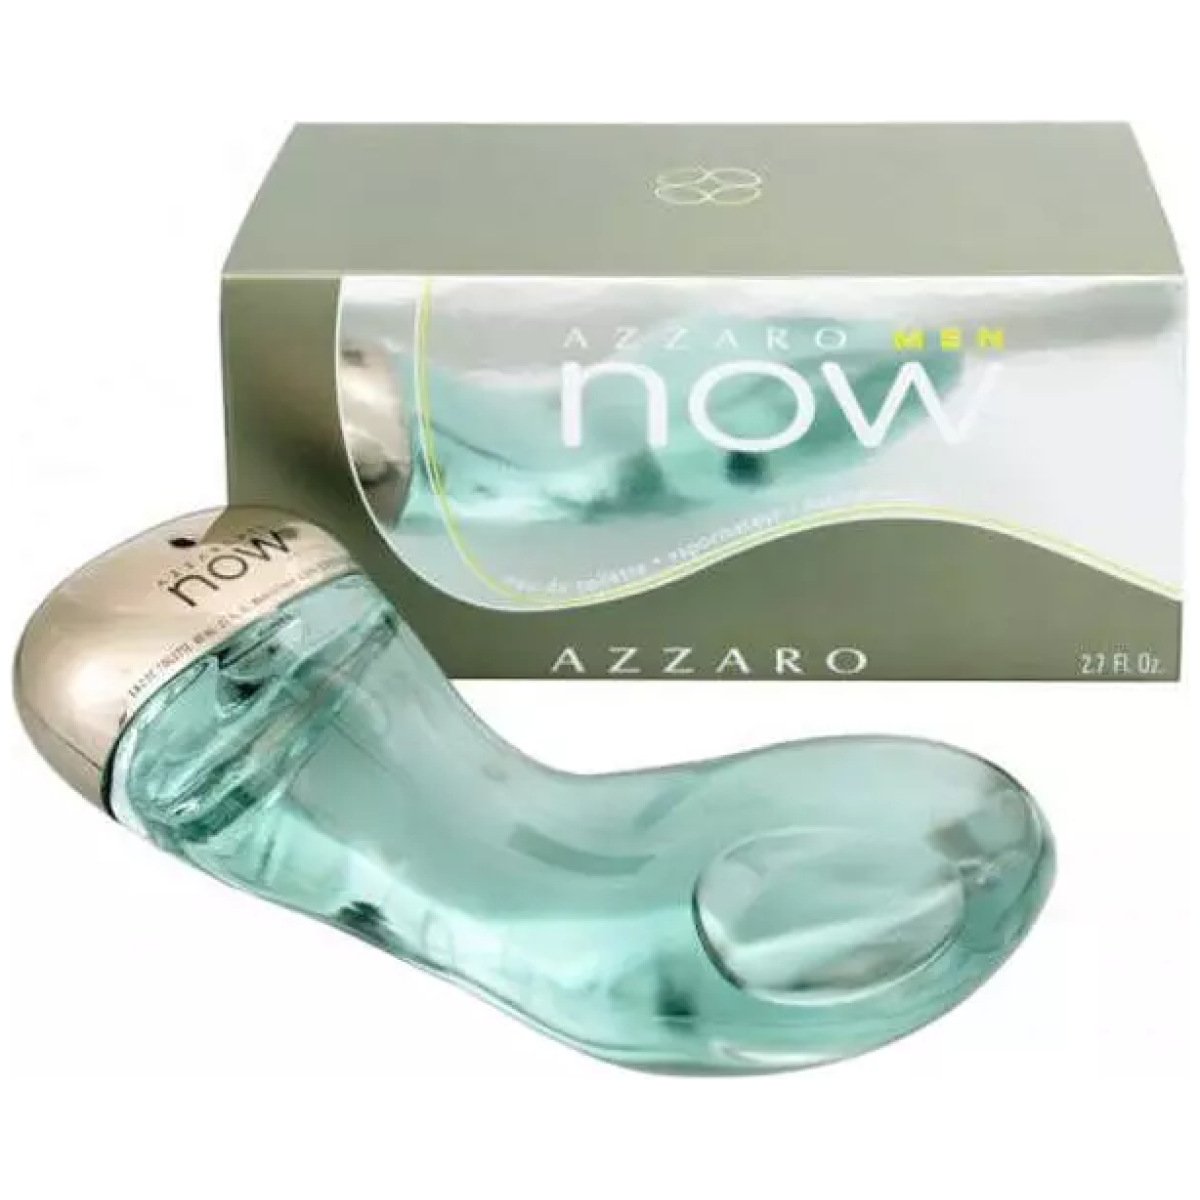 Azzaro Now EDT Perfume For Men 80ml